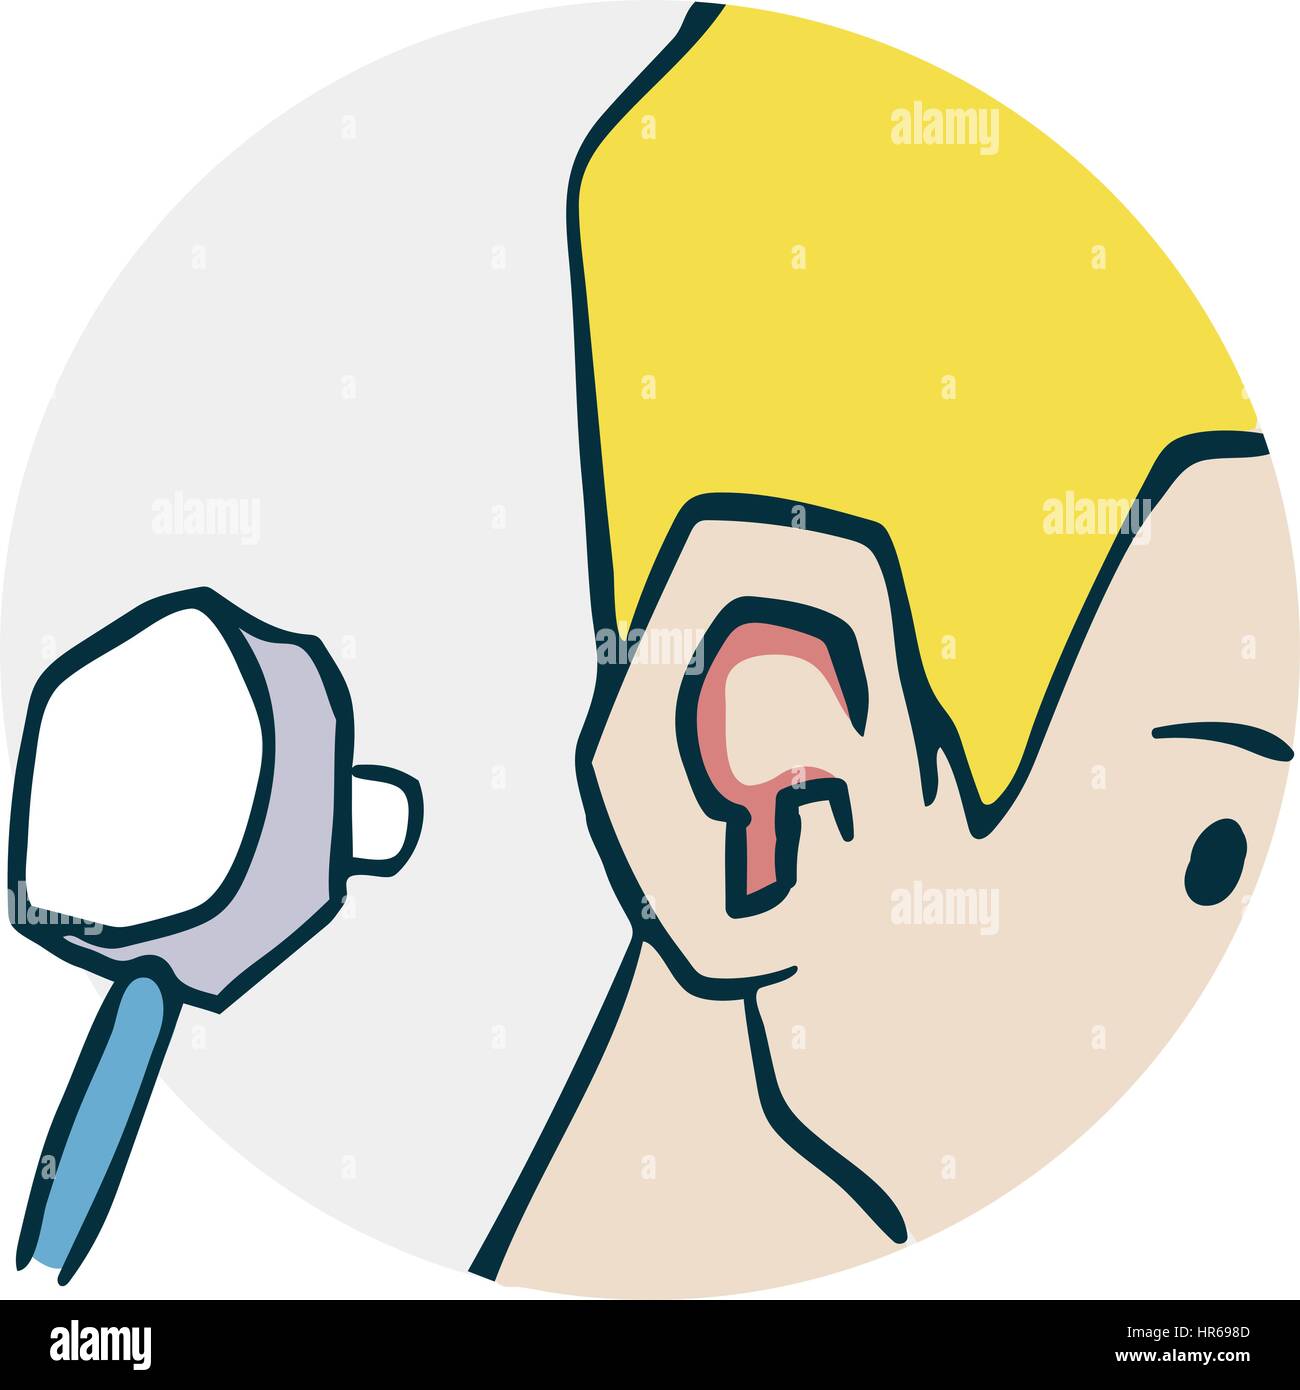 Probleme mit den Ohren. Überprüfen Sie die Ohren Stethoskop. Symbol zu medizinischen Themen. Beispiel für einen lustigen Cartoon-Stil Stock Vektor